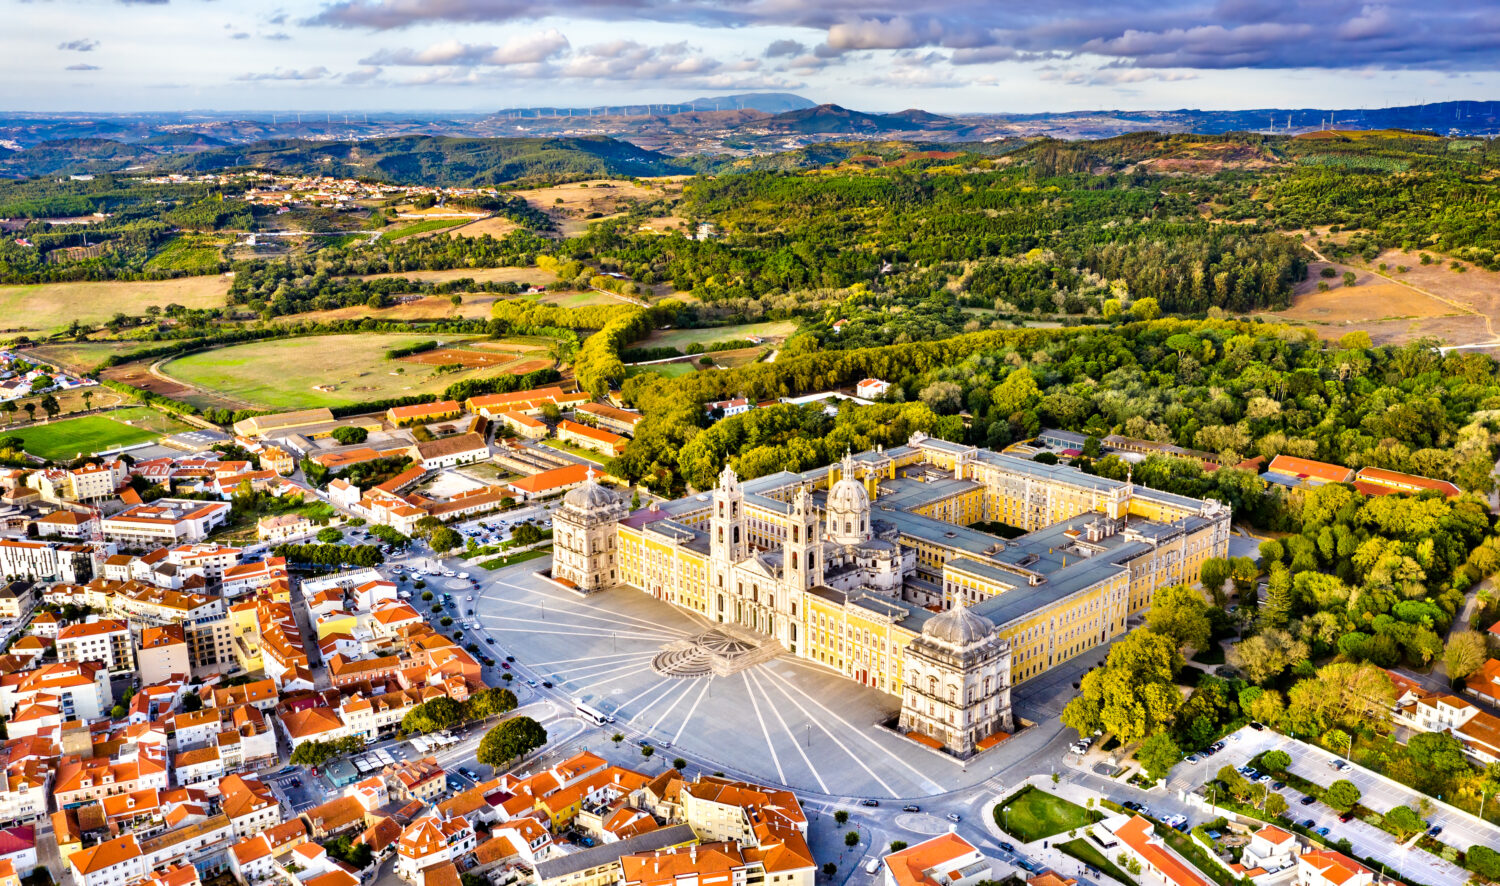 Veduta aerea del Palazzo di Mafra.  Patrimonio mondiale dell'UNESCO in Portogallo